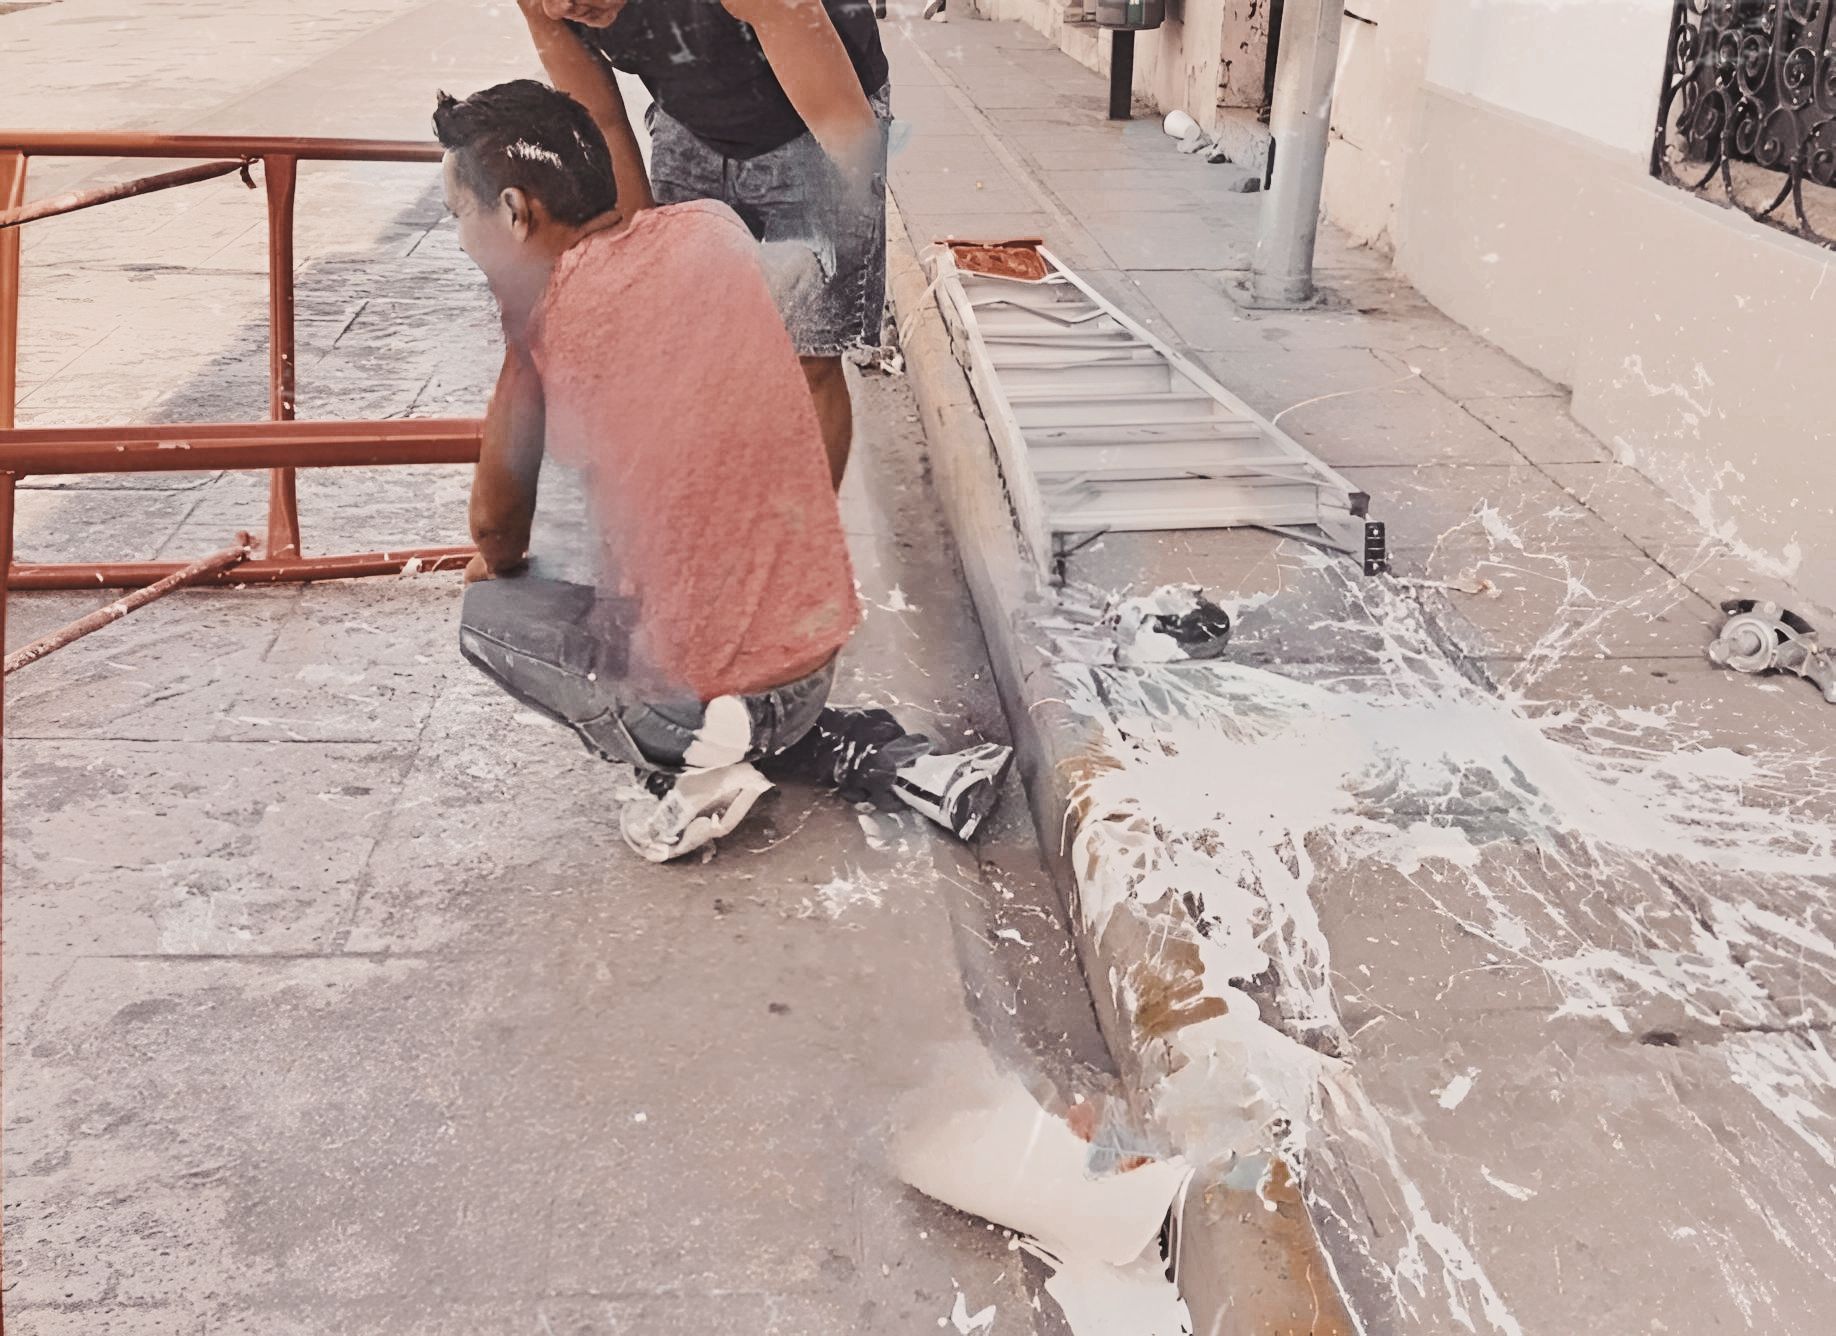 Trabajador de la pintura se desploma desde un andamio de 3 metros en plena calle del centro de Mérida